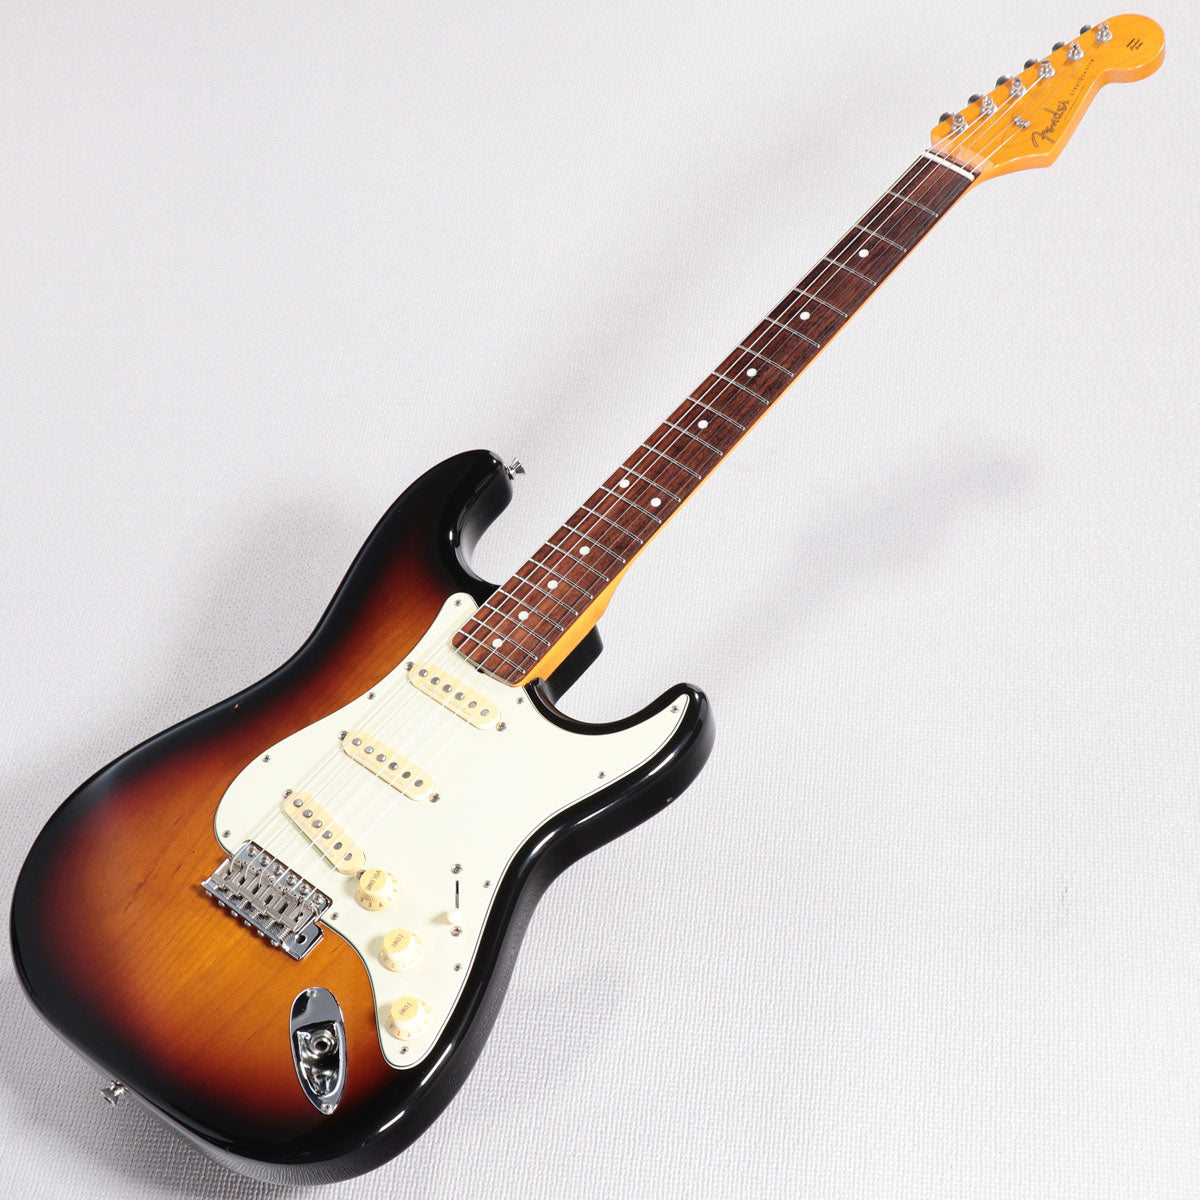 Fender Japan ストラトキャスター ST57 dmc ディマジオコレクション ...